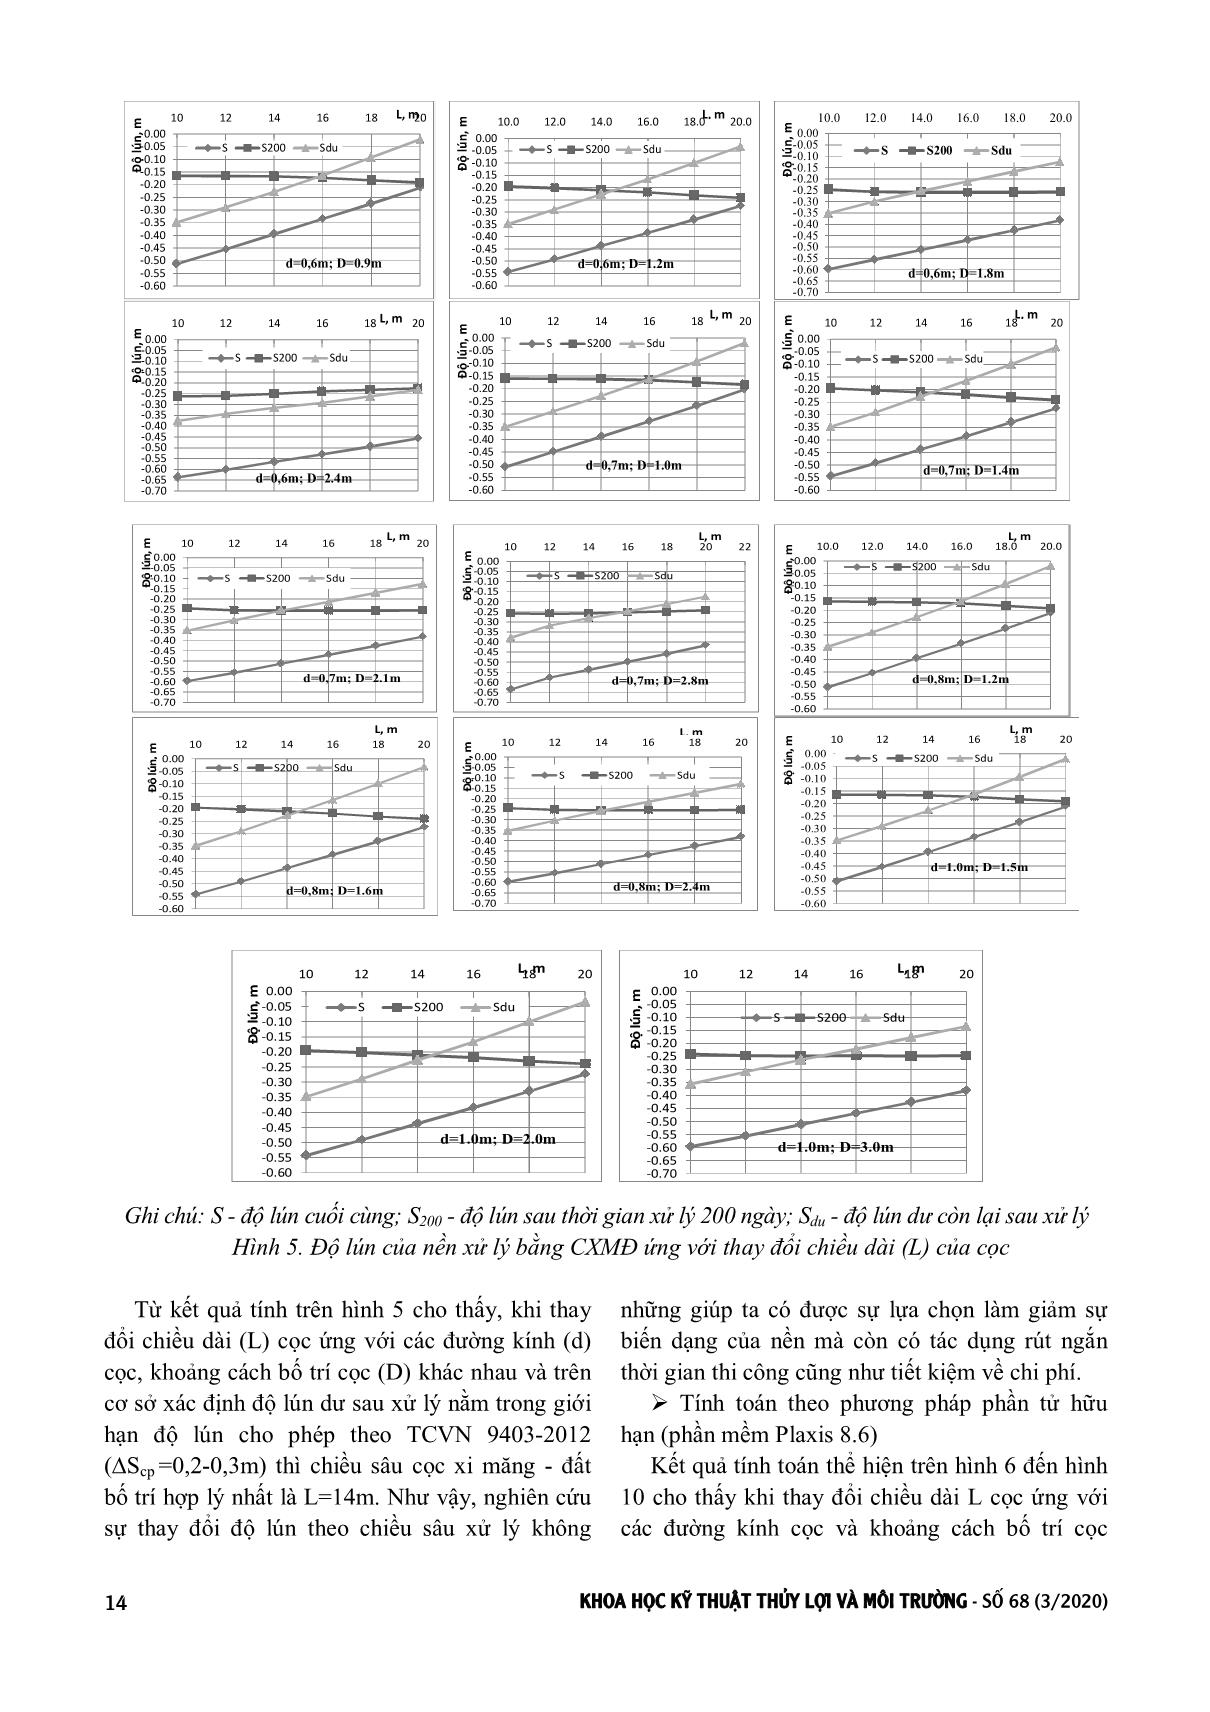 Ảnh hưởng của các thông số hình học cọc xi măng - Đất đến ổn định nền đường đắp trên đất yếu trang 5